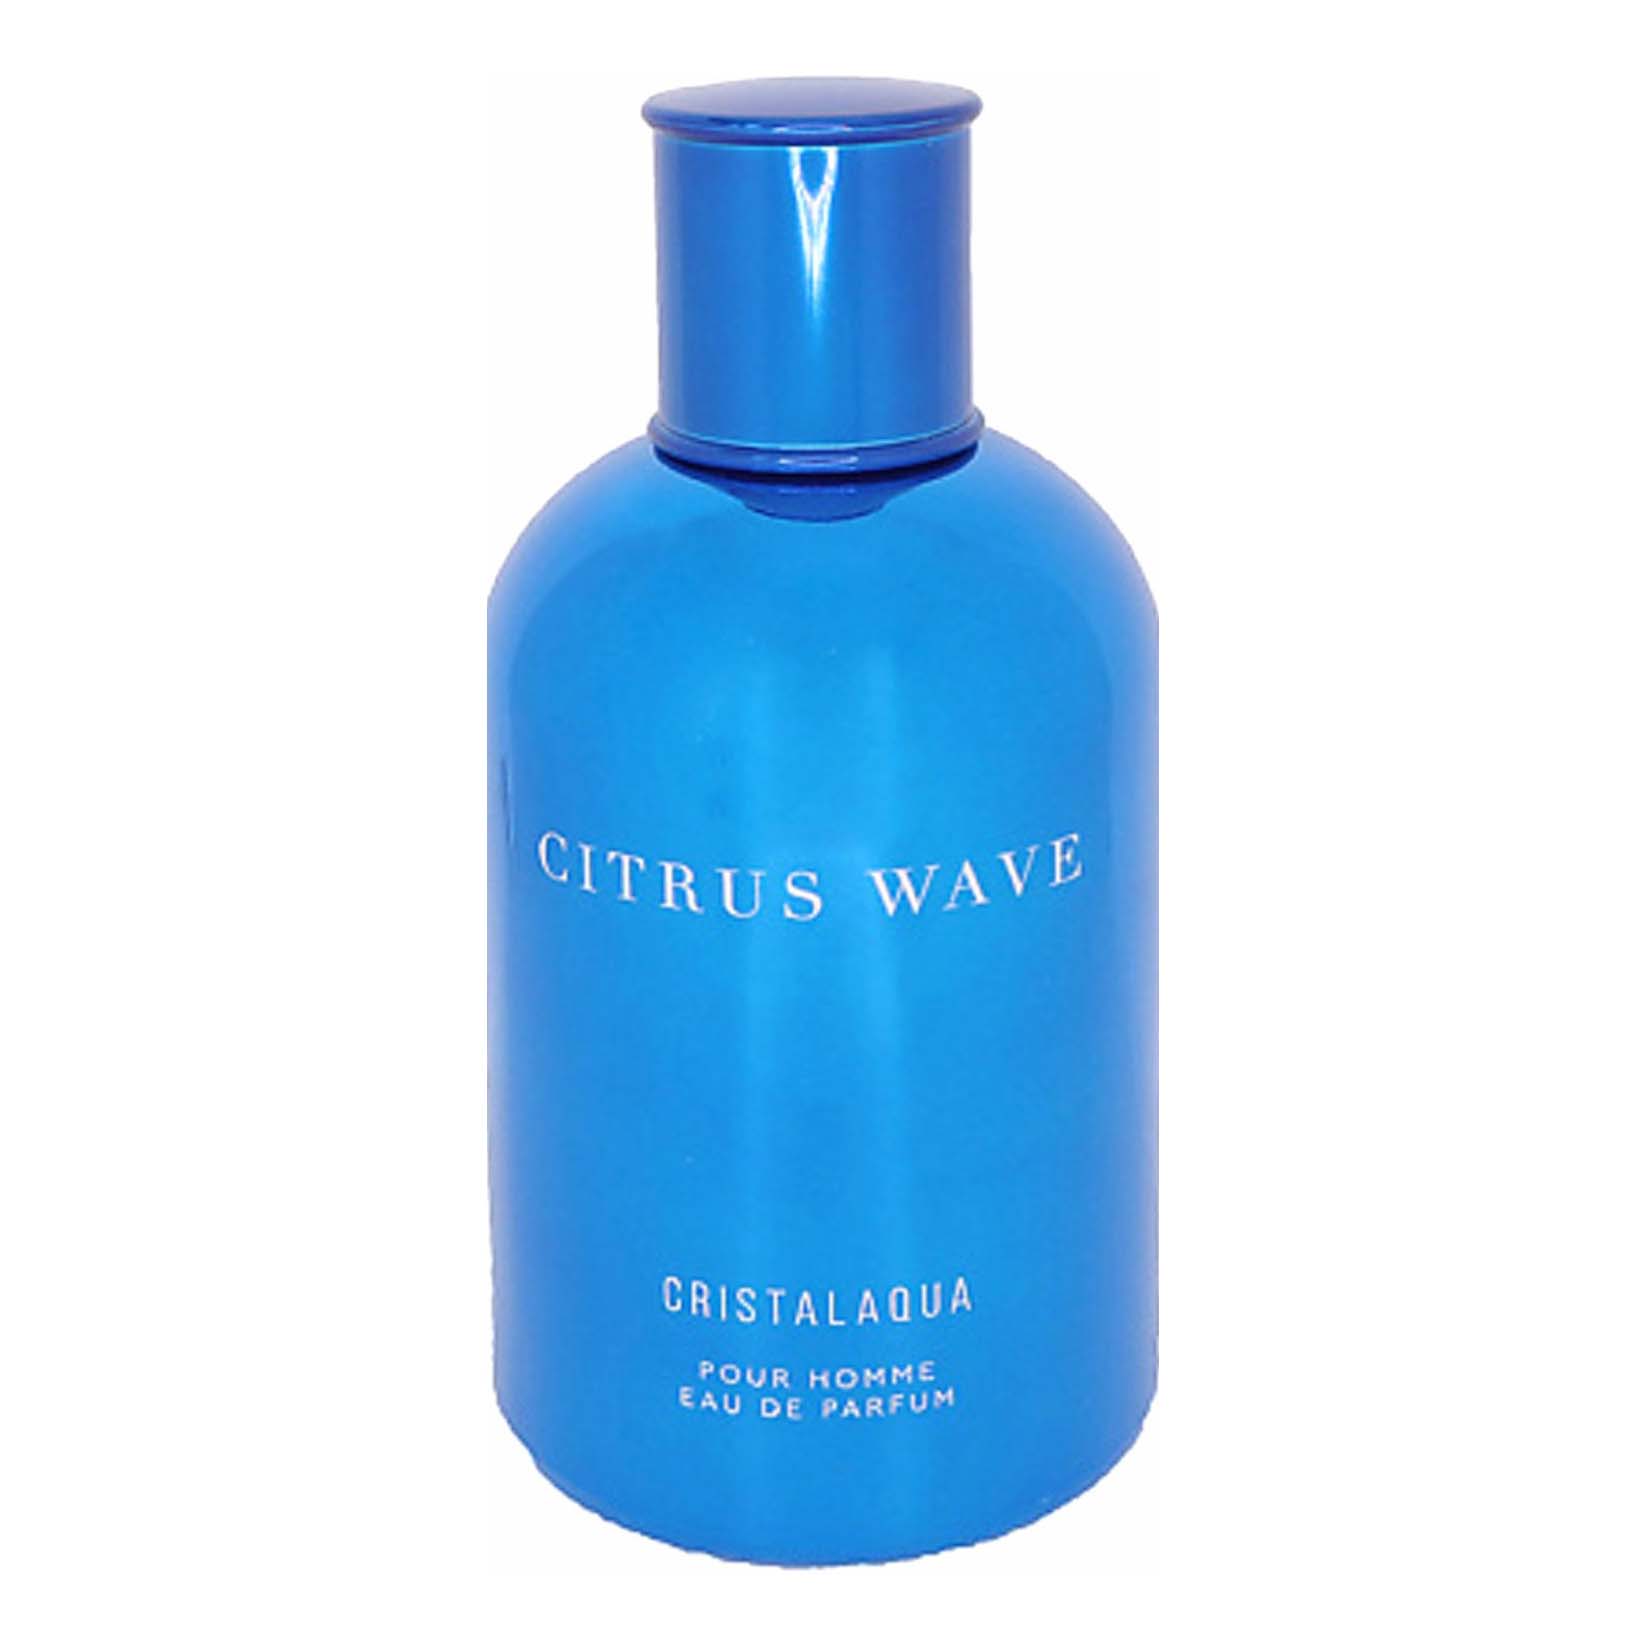 Парфюмерная вода Cristalaqua Citrus wave мужская 100 мл italian citrus